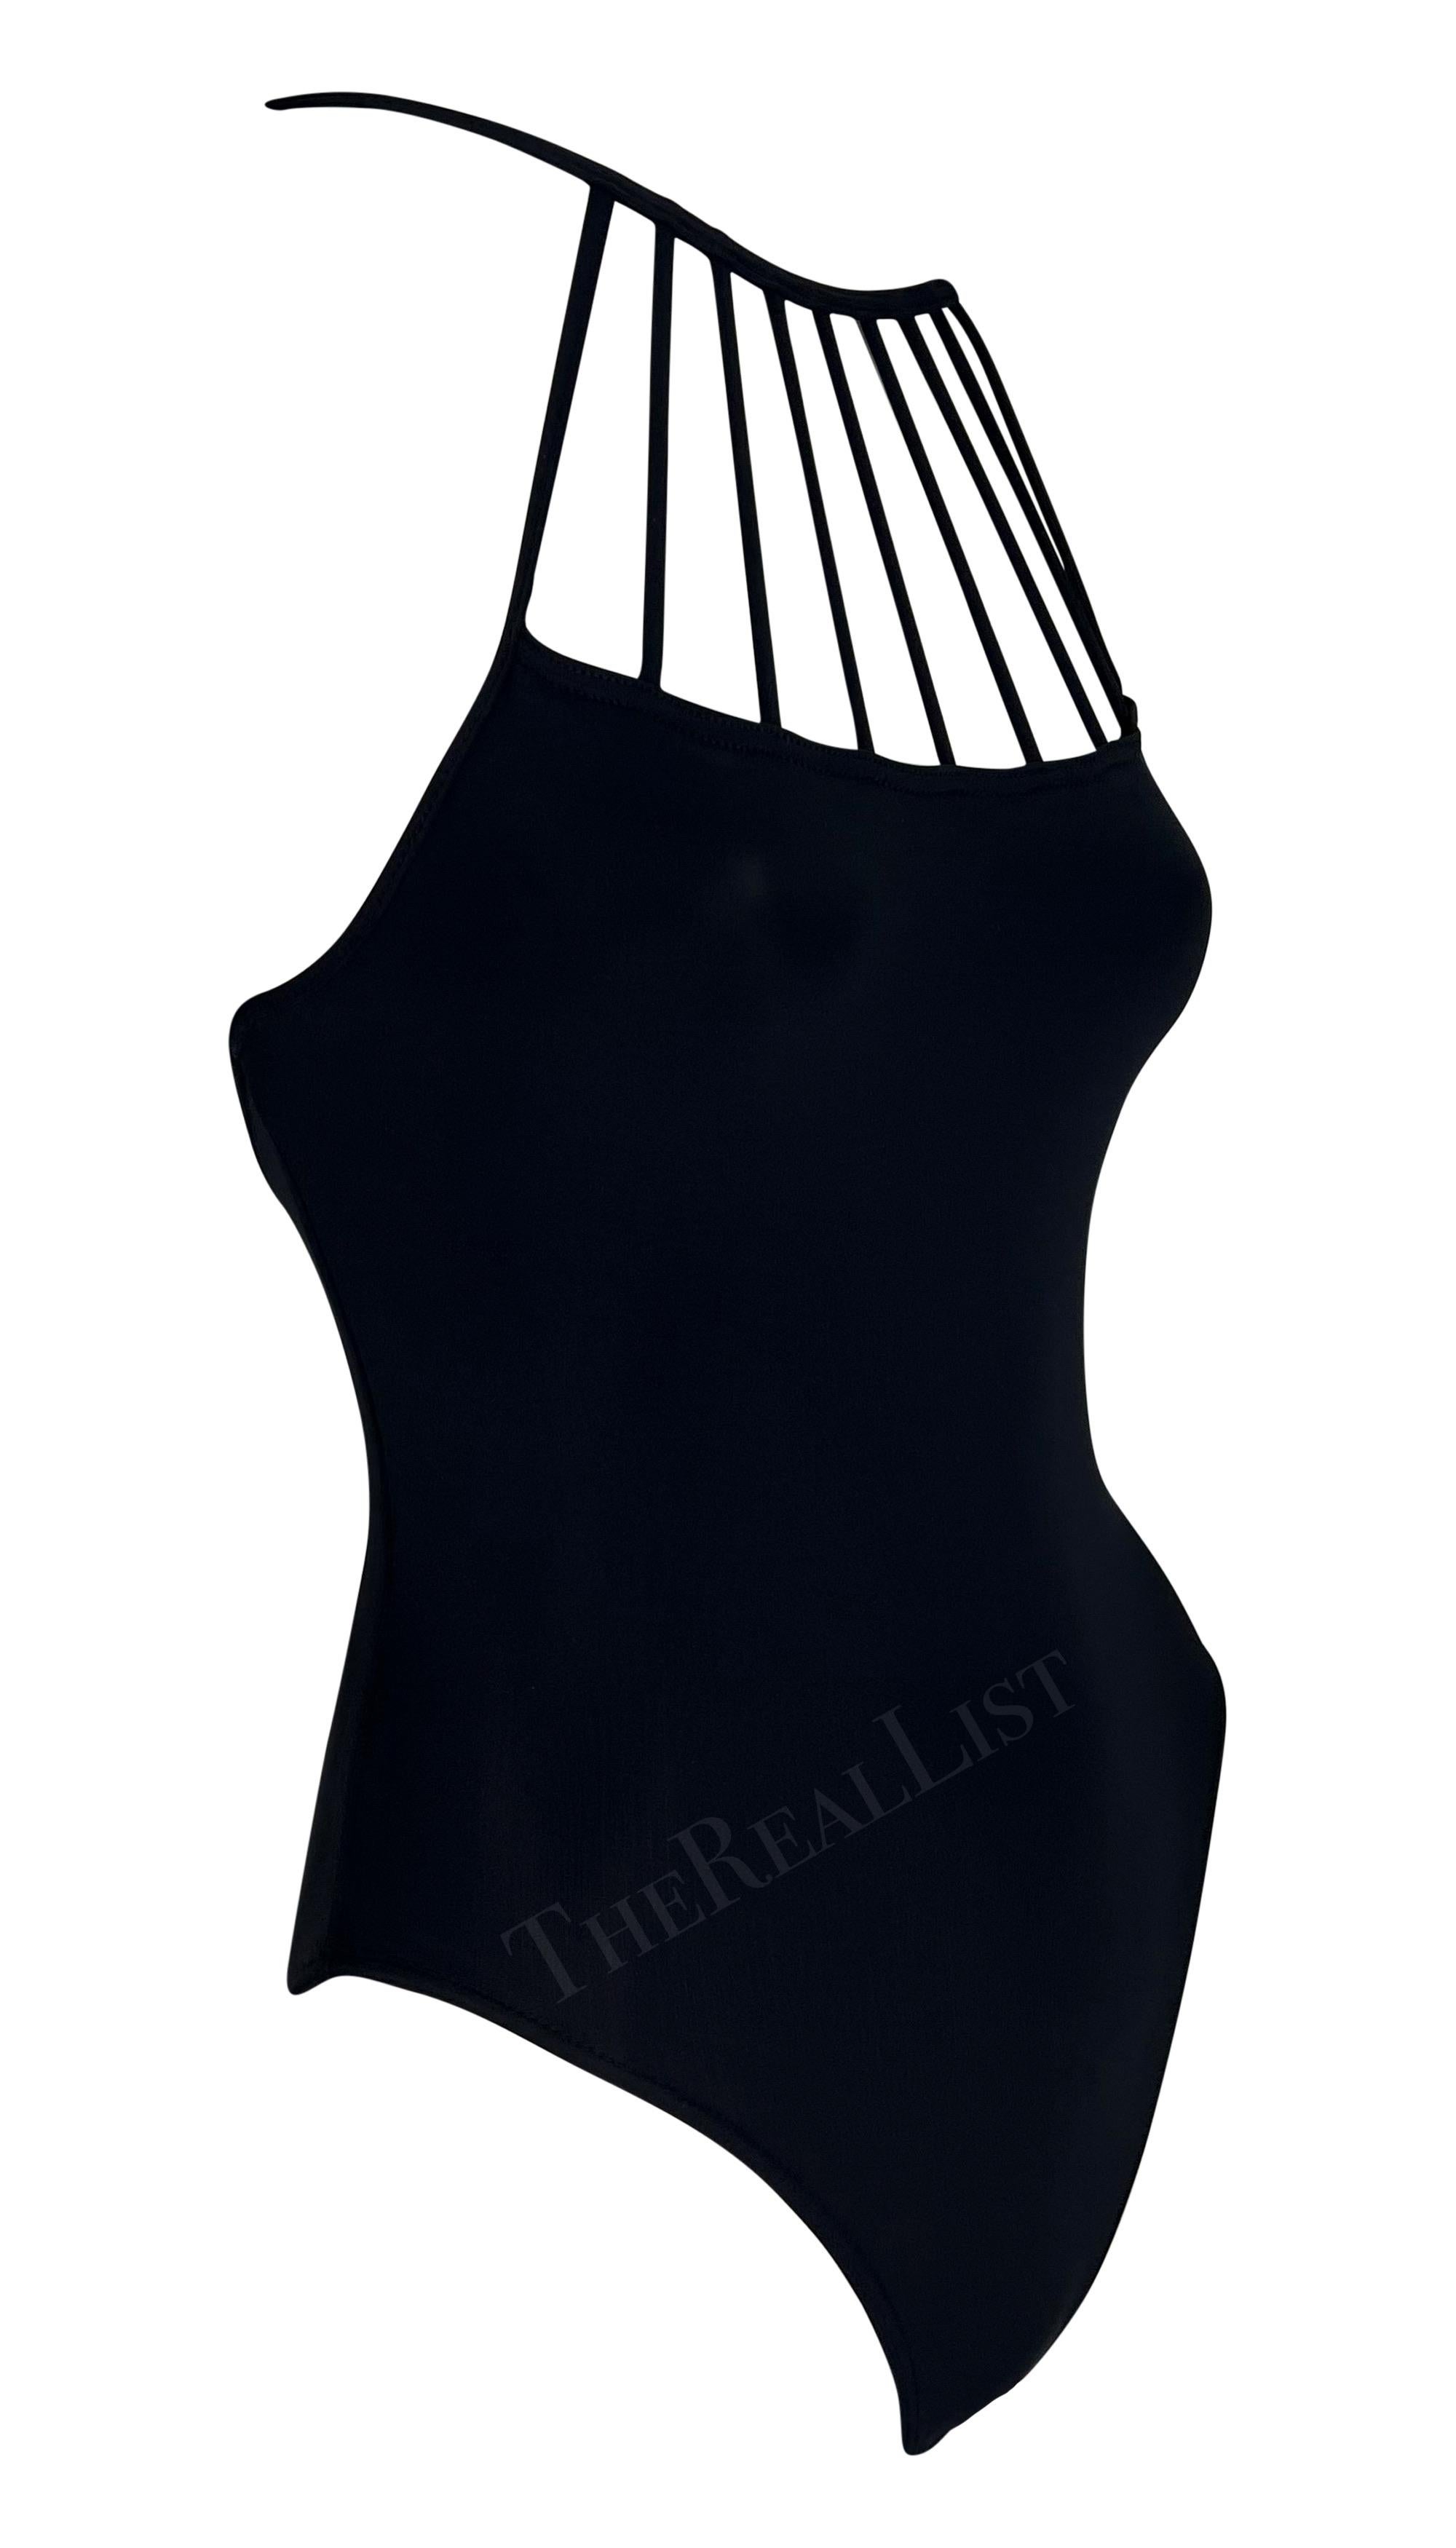 S/S 1998 Herve Leger Black One Piece Body Suit Swimsuit Bodysuit For Sale 4